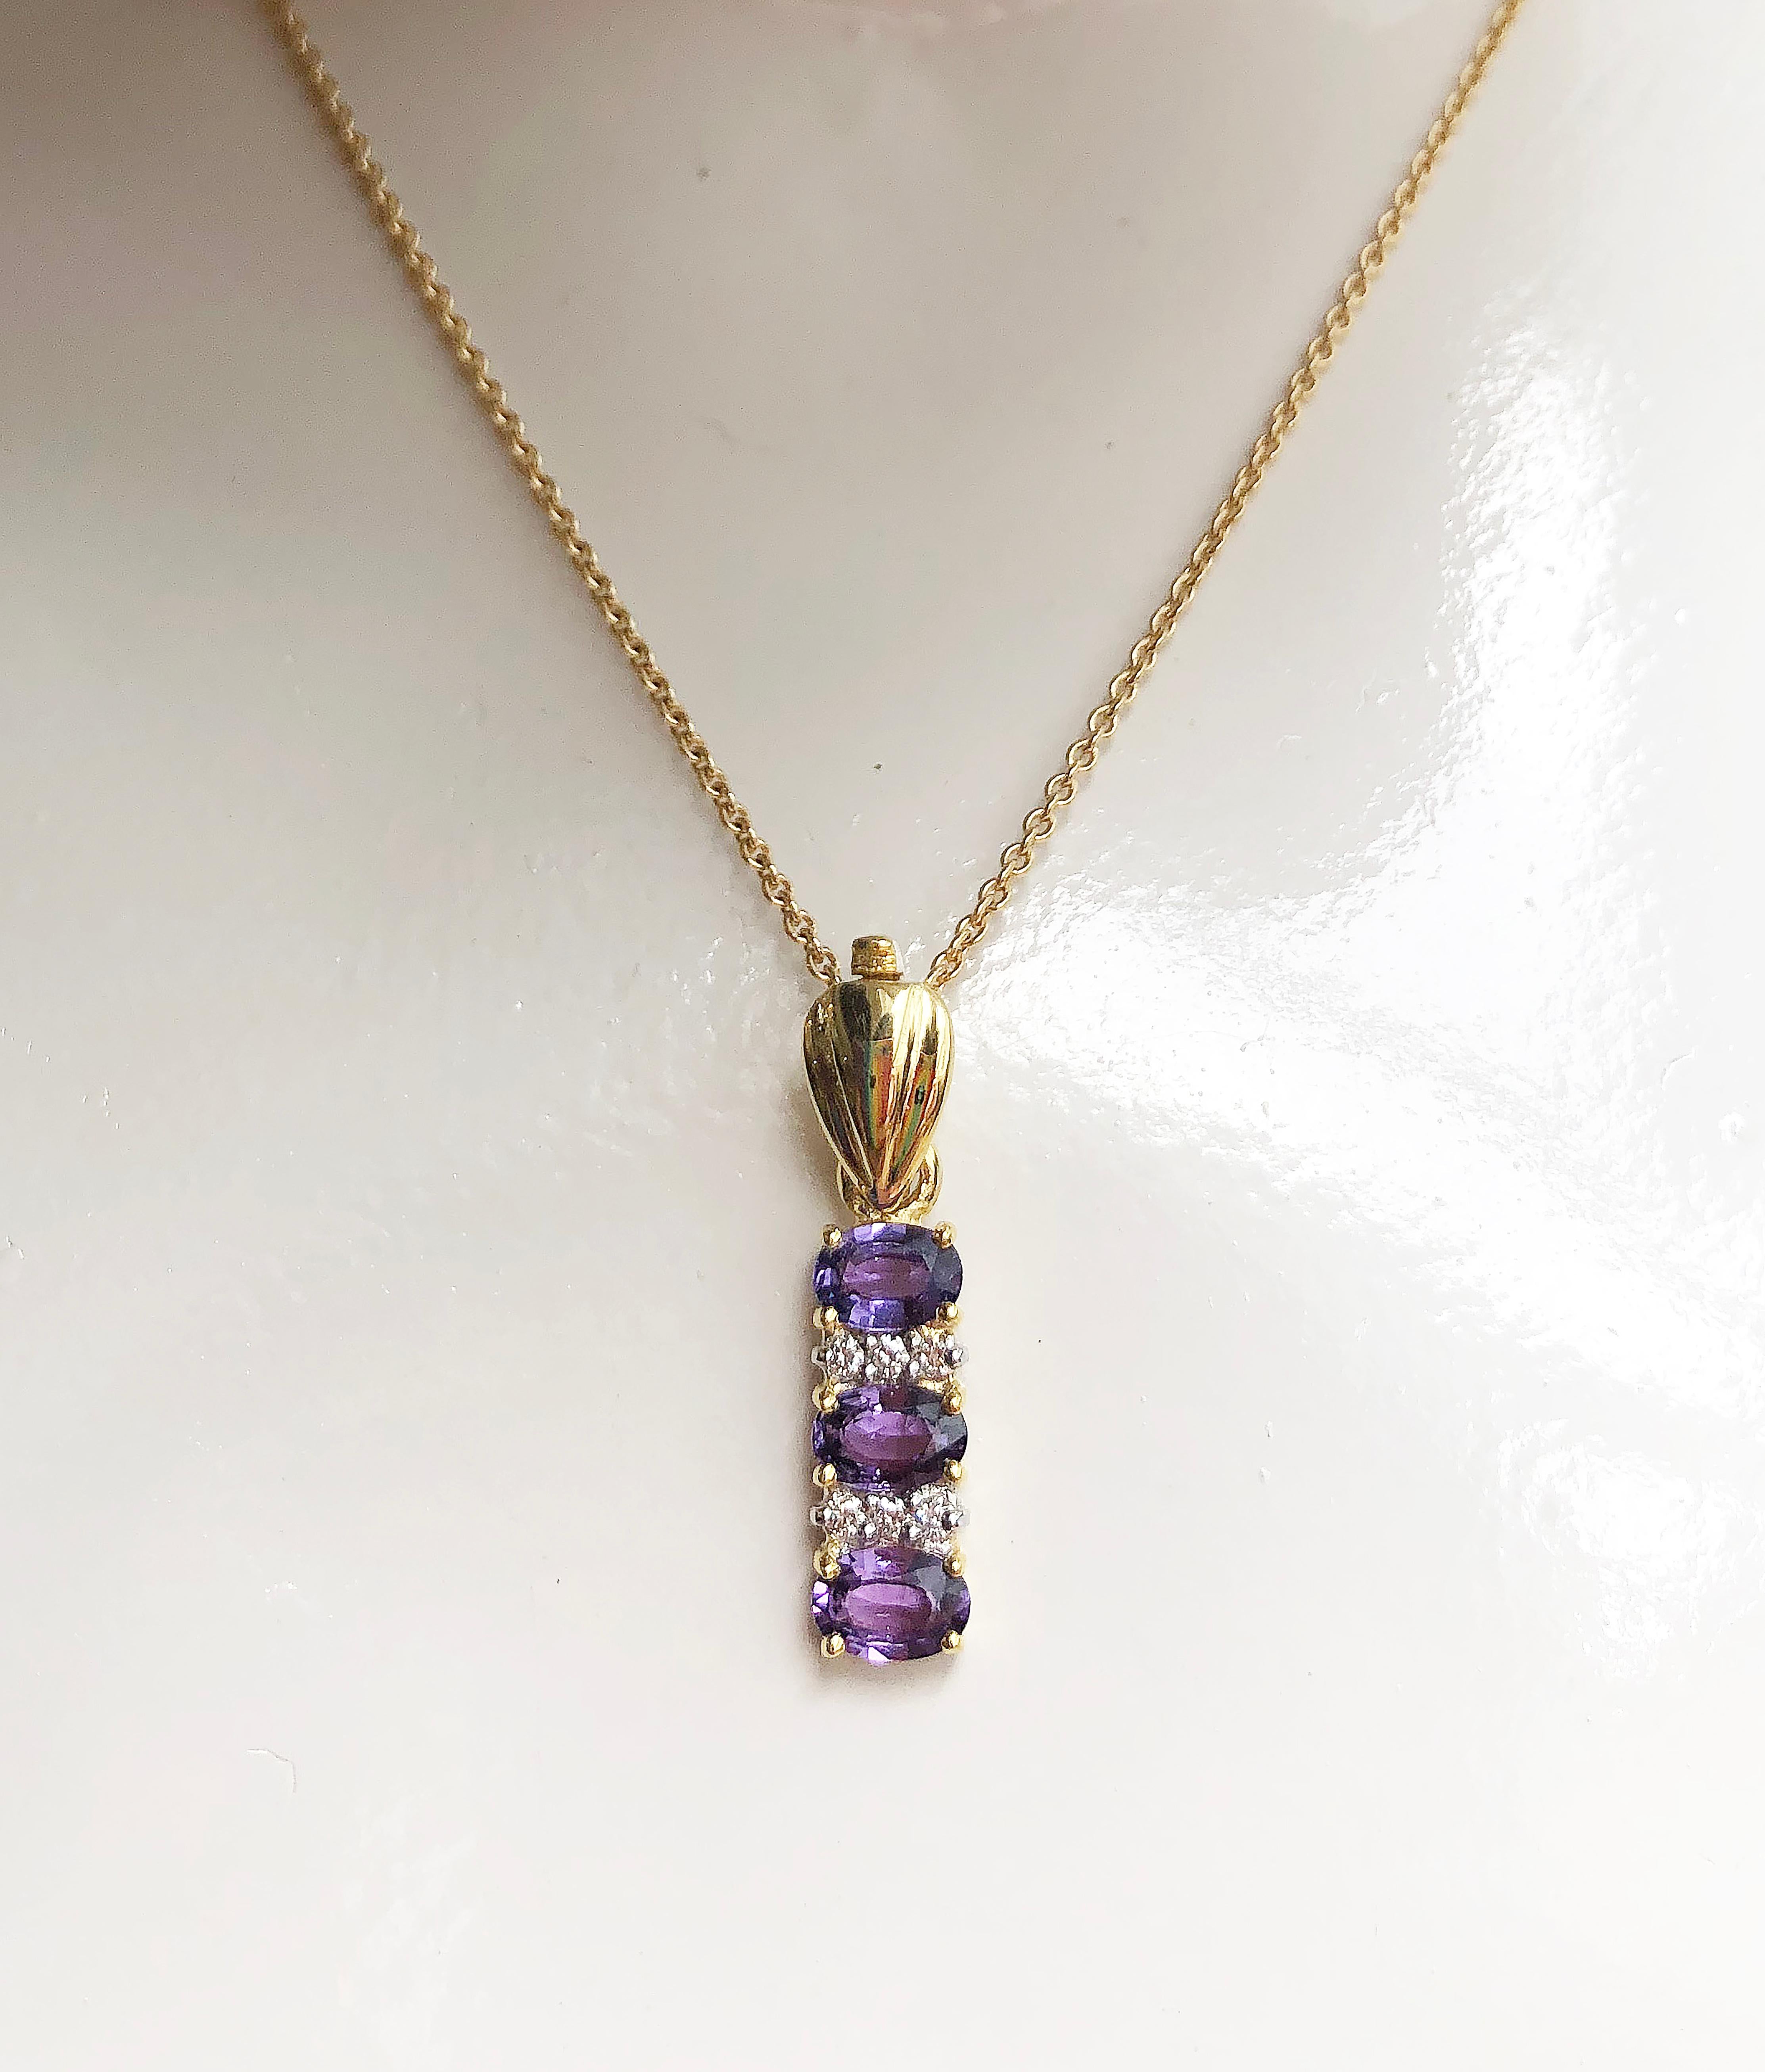 Pendentif en saphir violet 1,66 carat et diamant 0,10 carat serti dans une monture en or 18 carats
(chaîne non incluse)

Largeur :  0.6 cm 
Longueur : 2,7 cm
Poids total : 3,94 grammes

